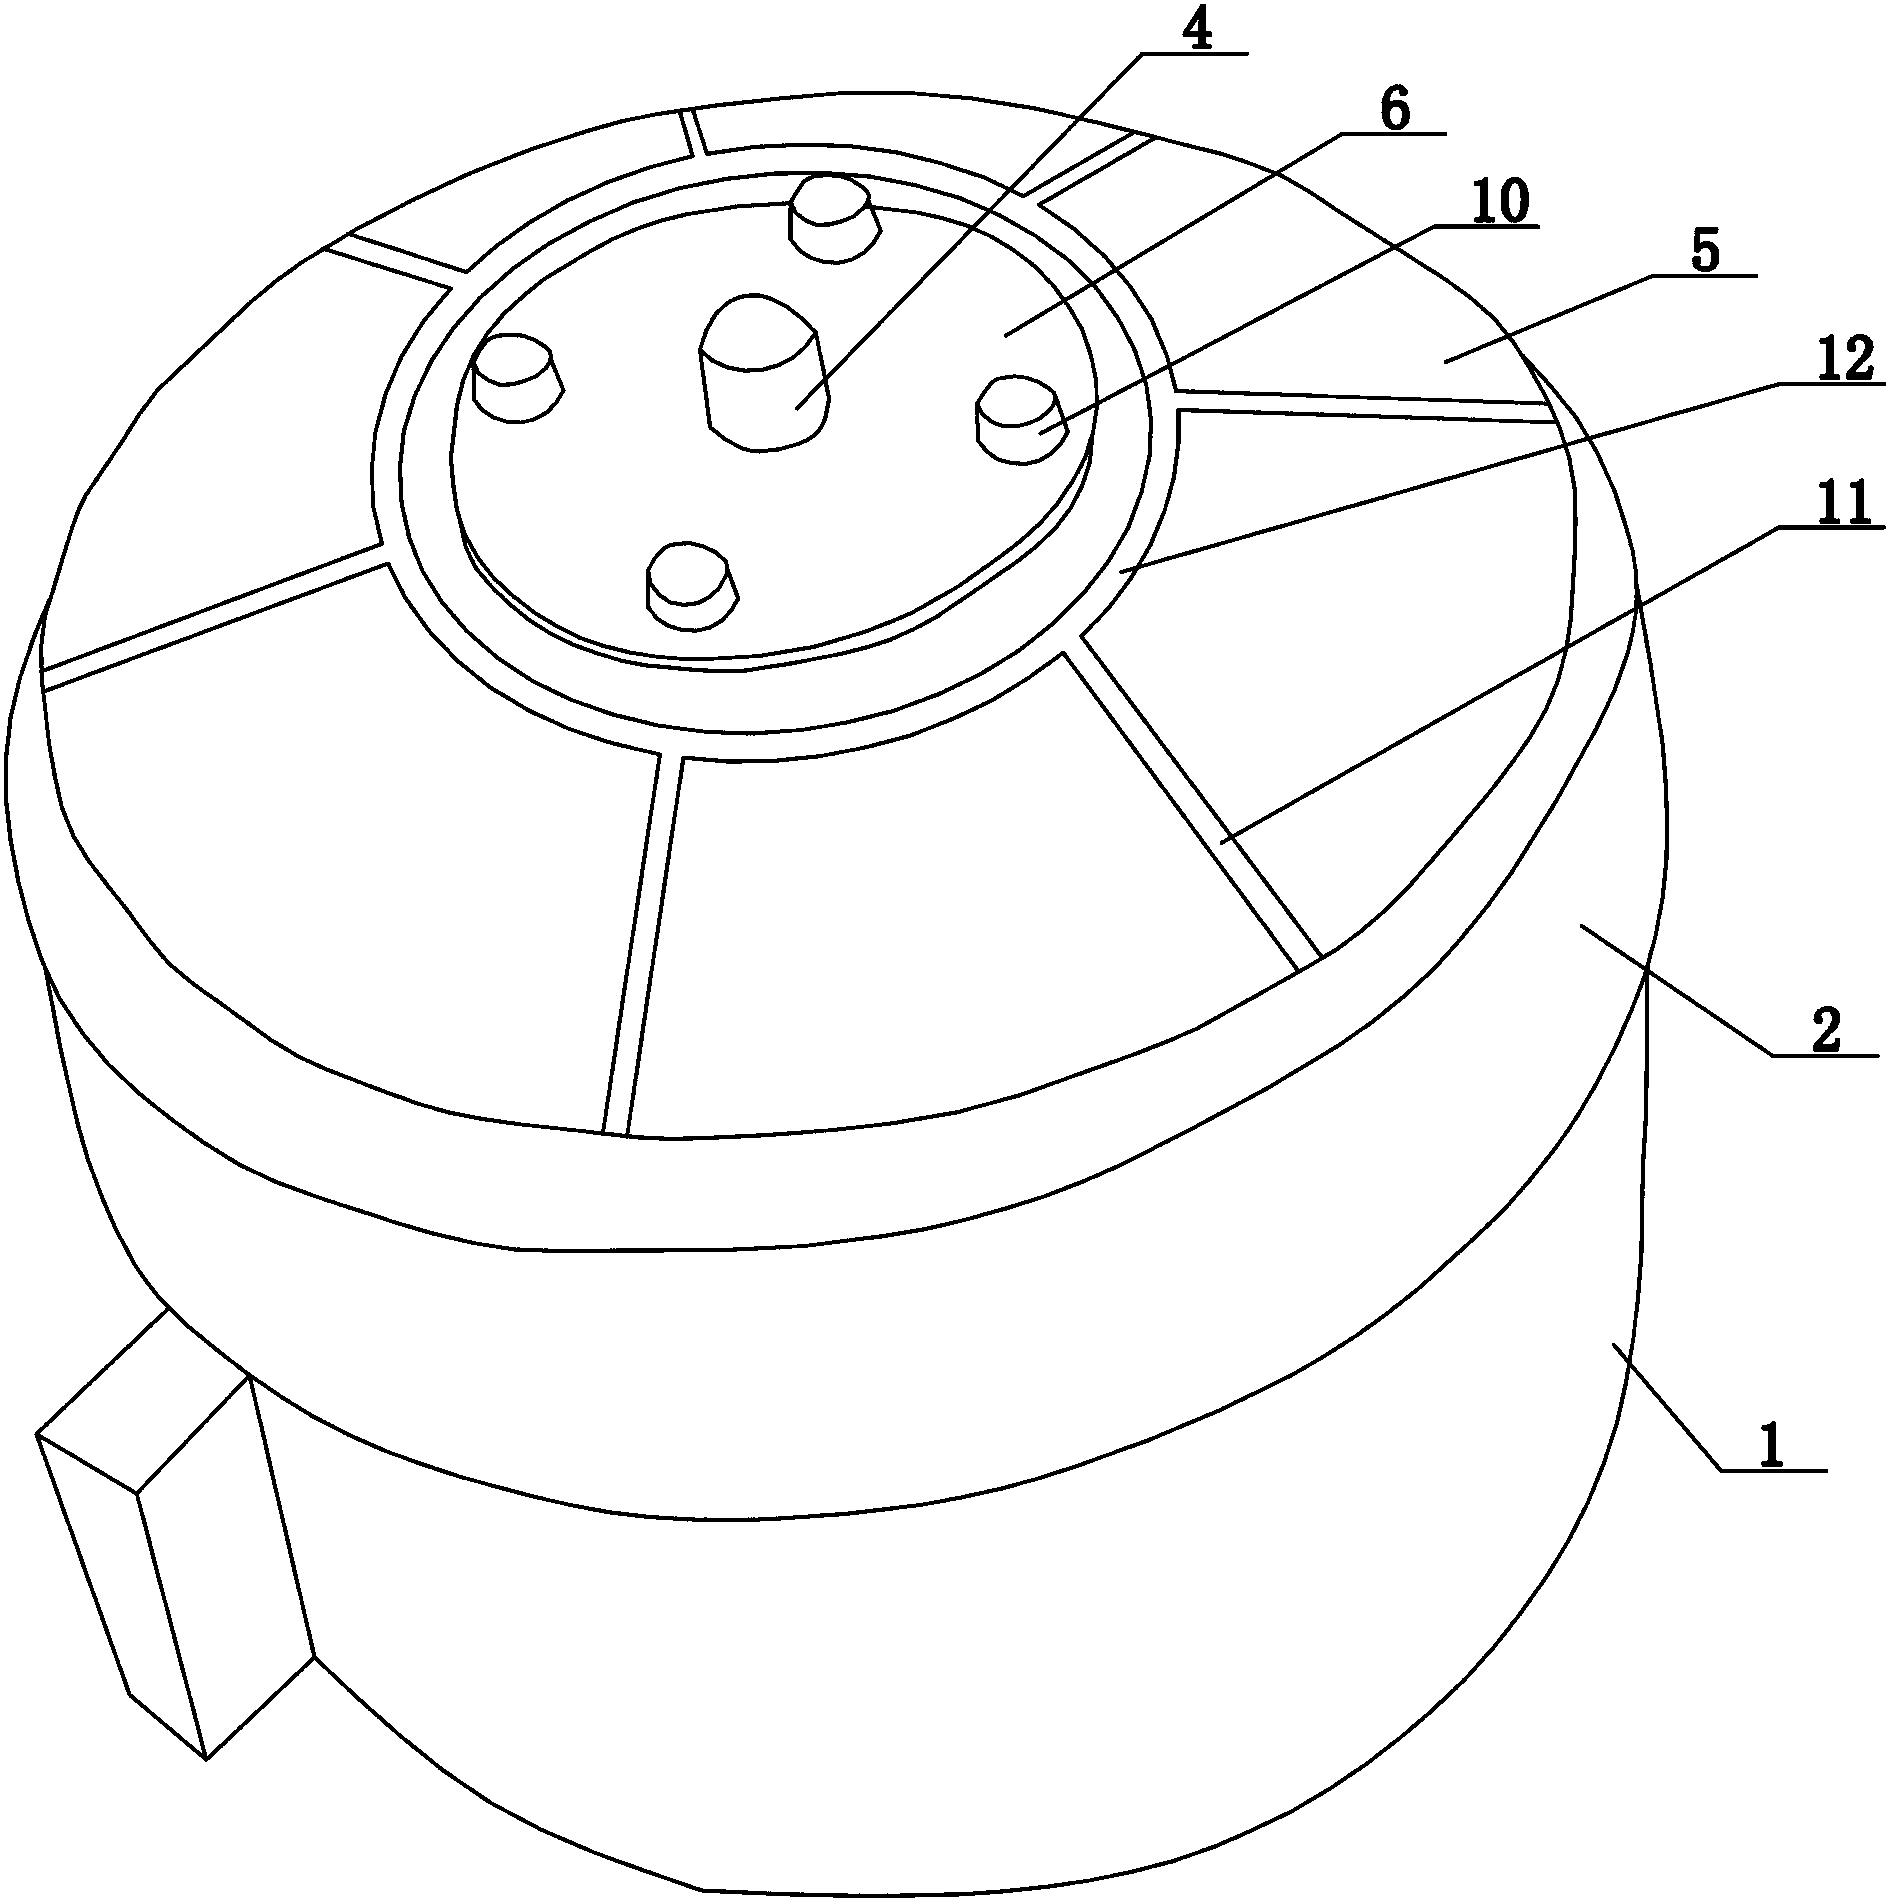 Inner rotor motor for fan